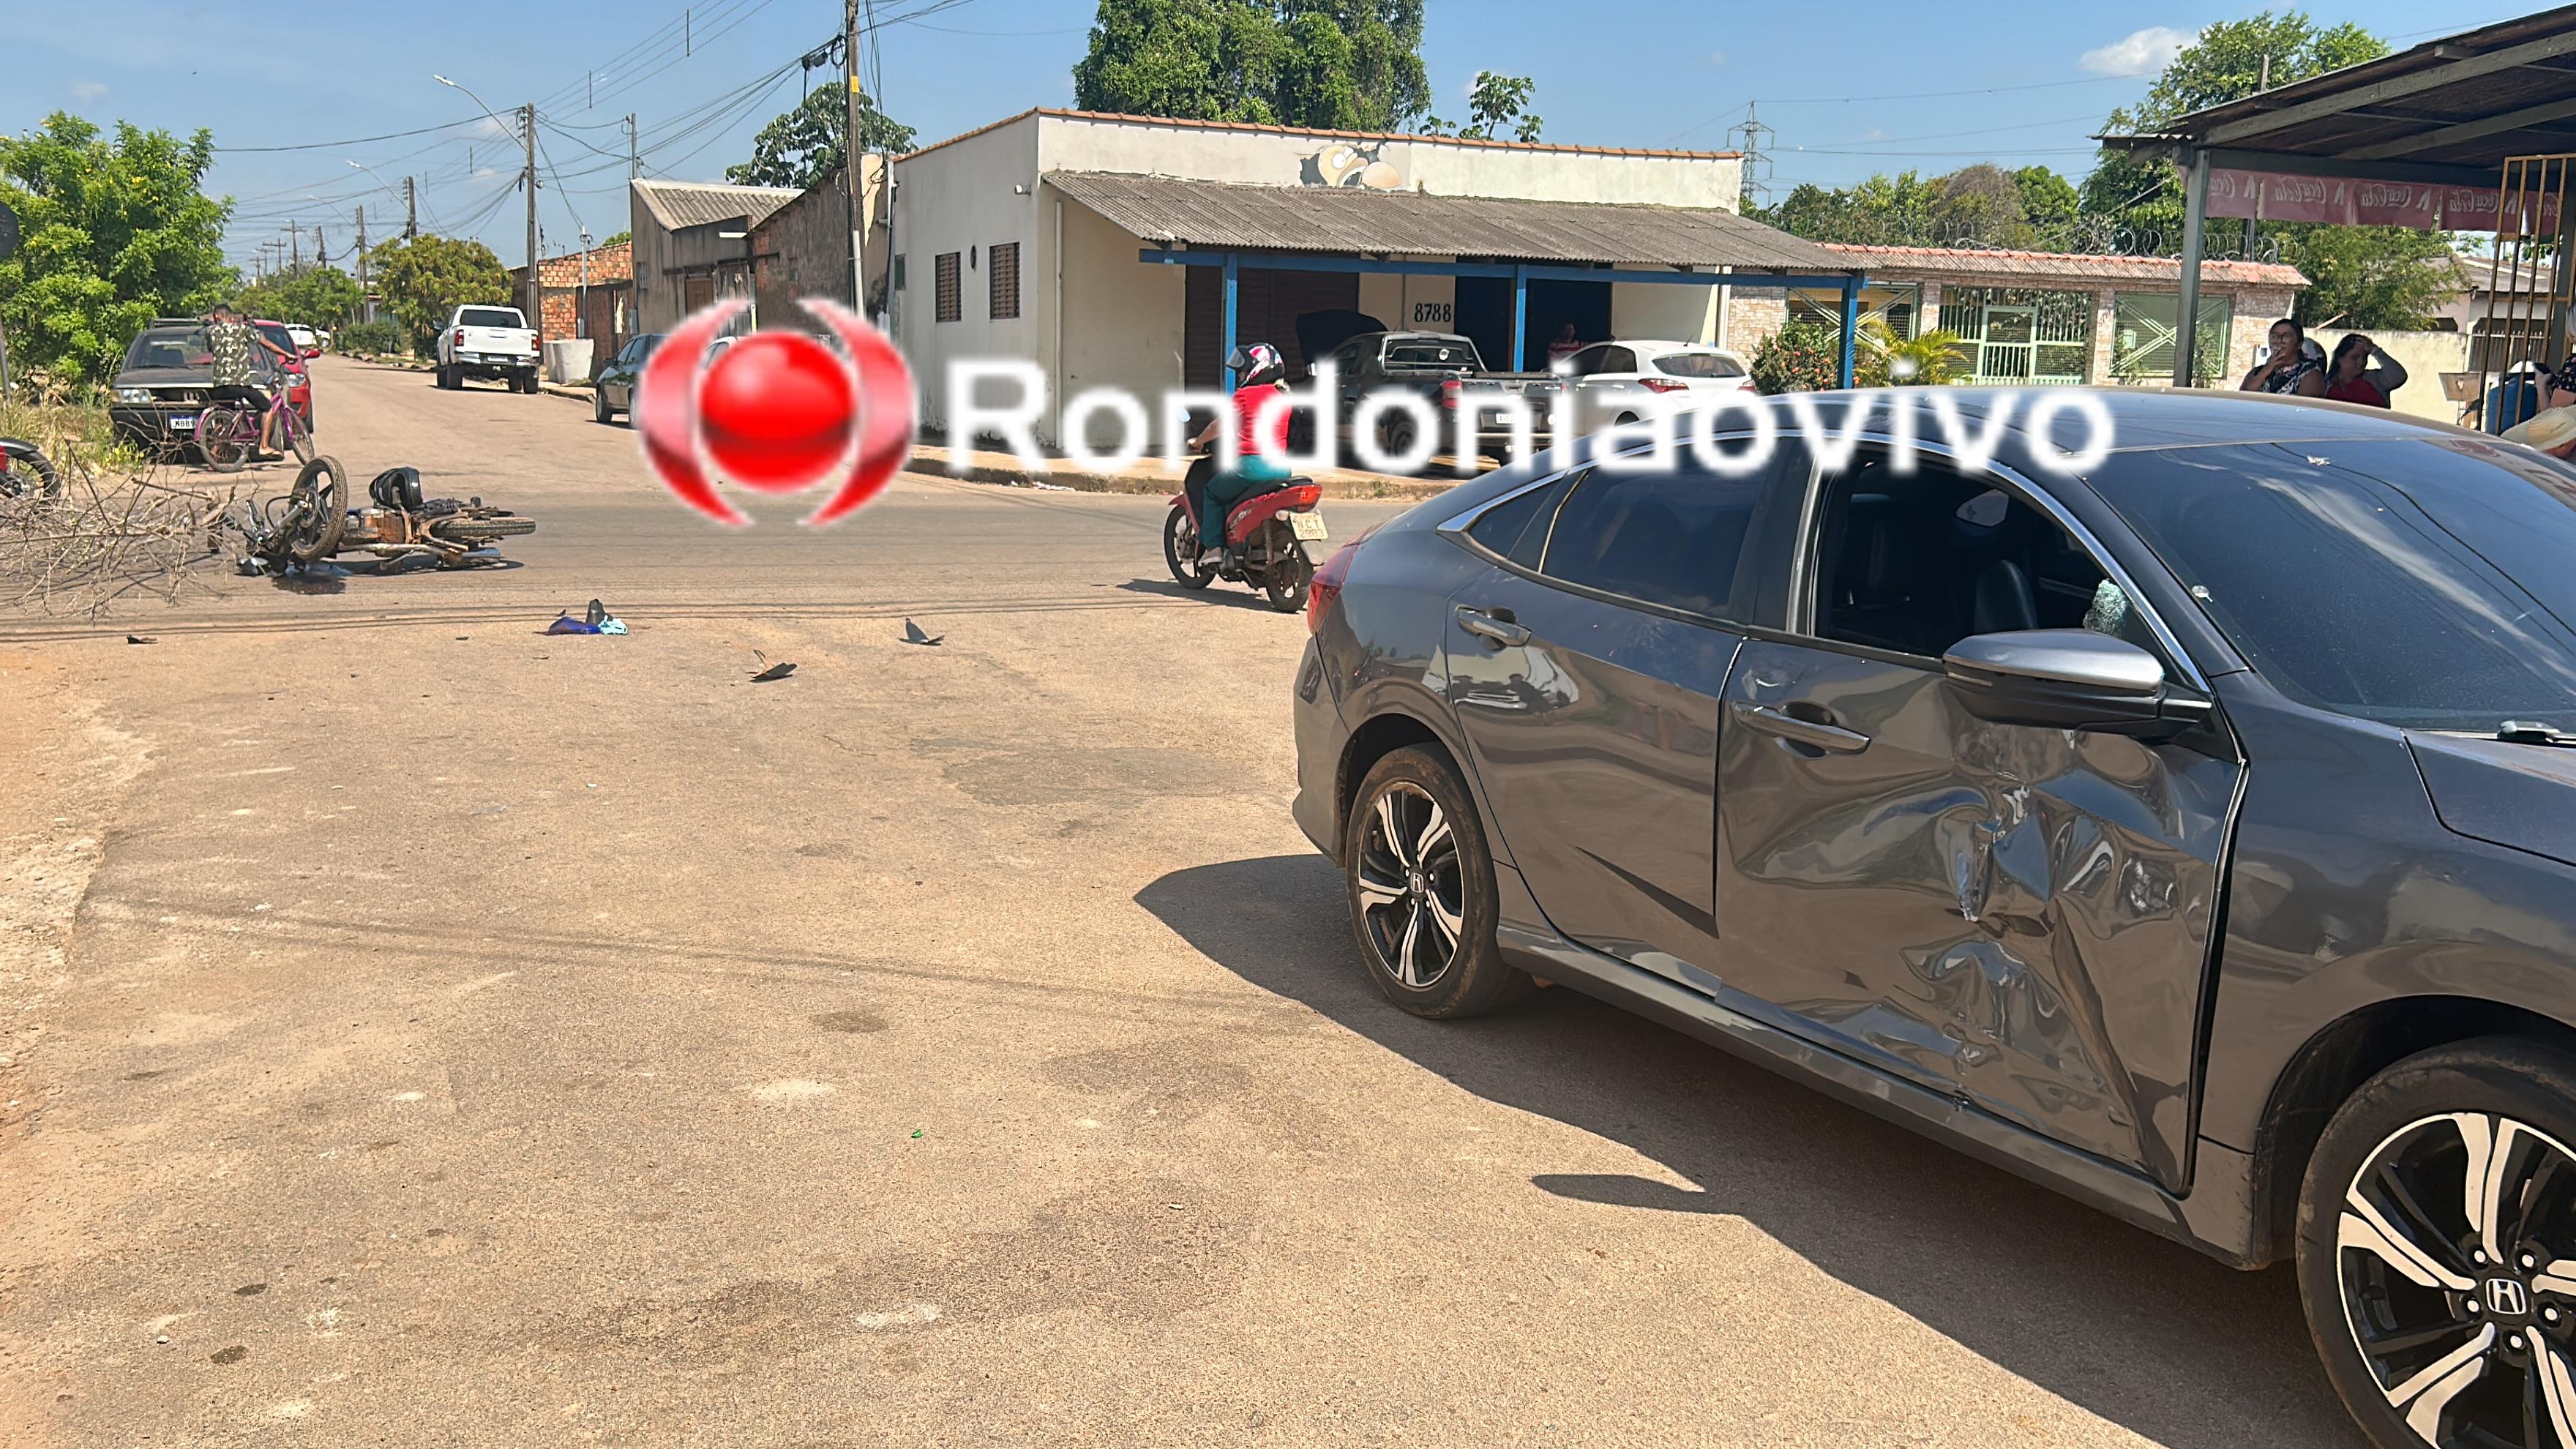 URGENTE: Mulher sofre traumatismo craniano em grave acidente contra Honda Civic